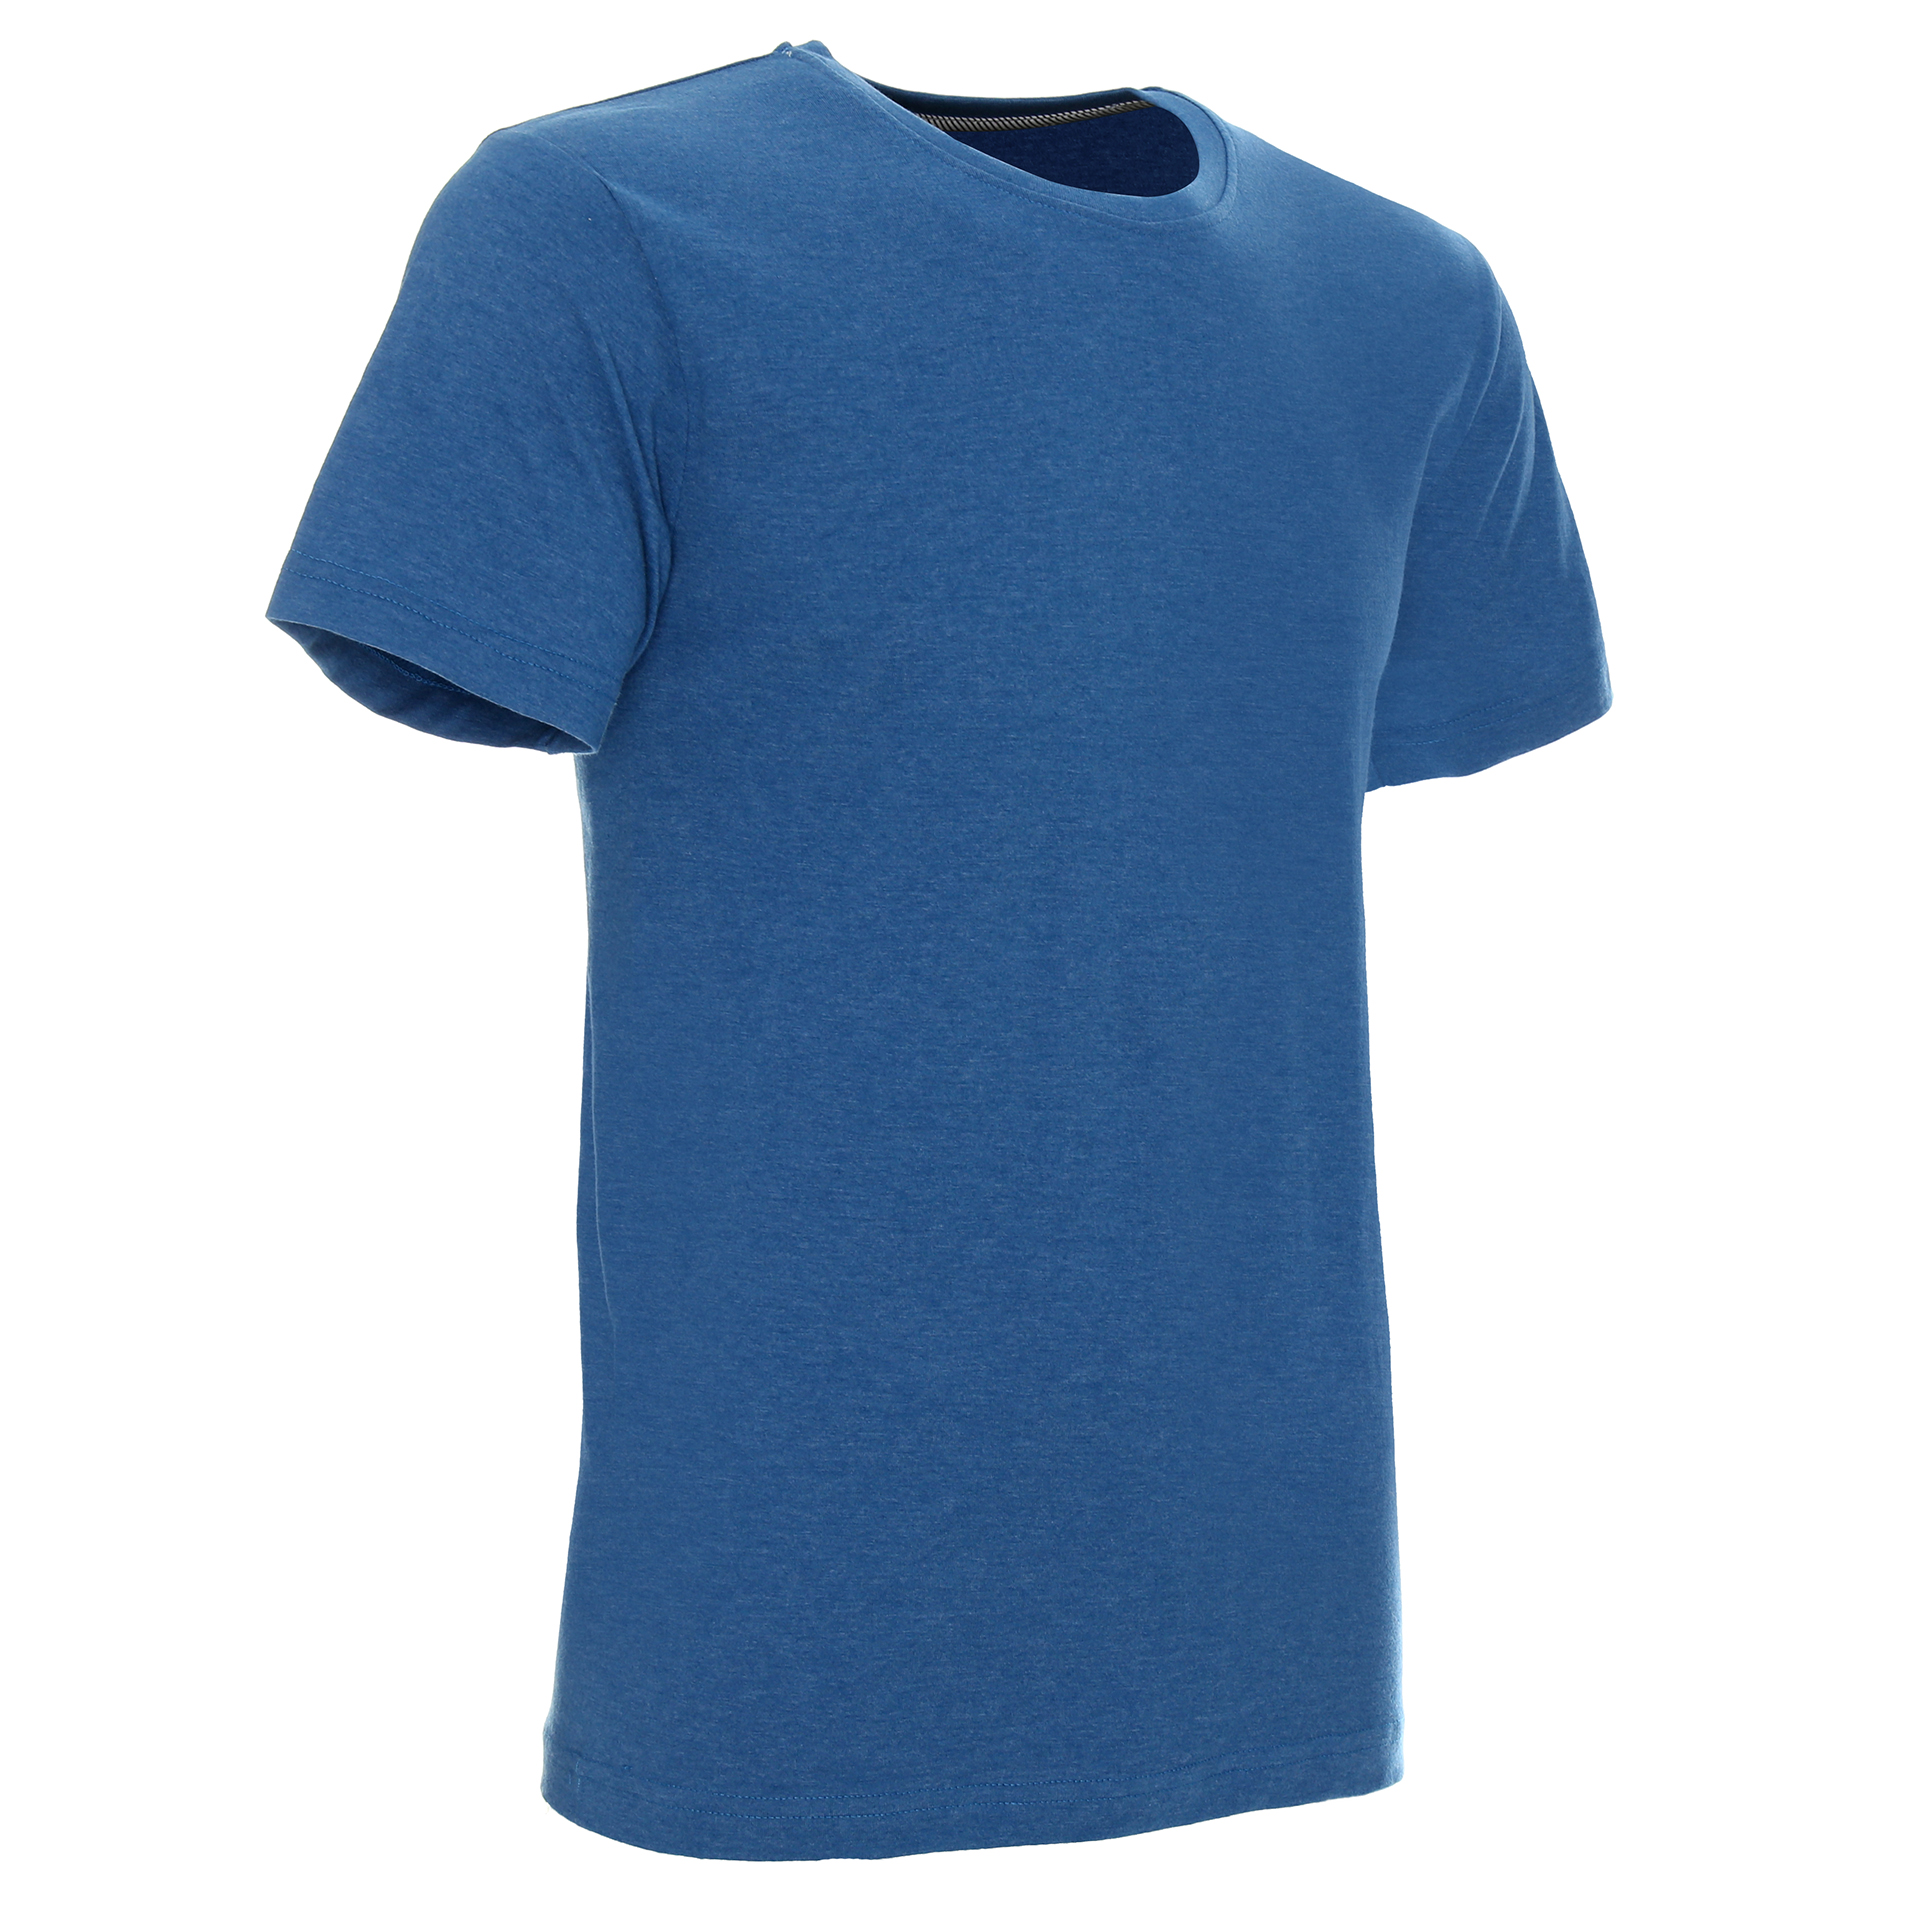 Koszulka Promostars Heavy Slim - niebieski melanż